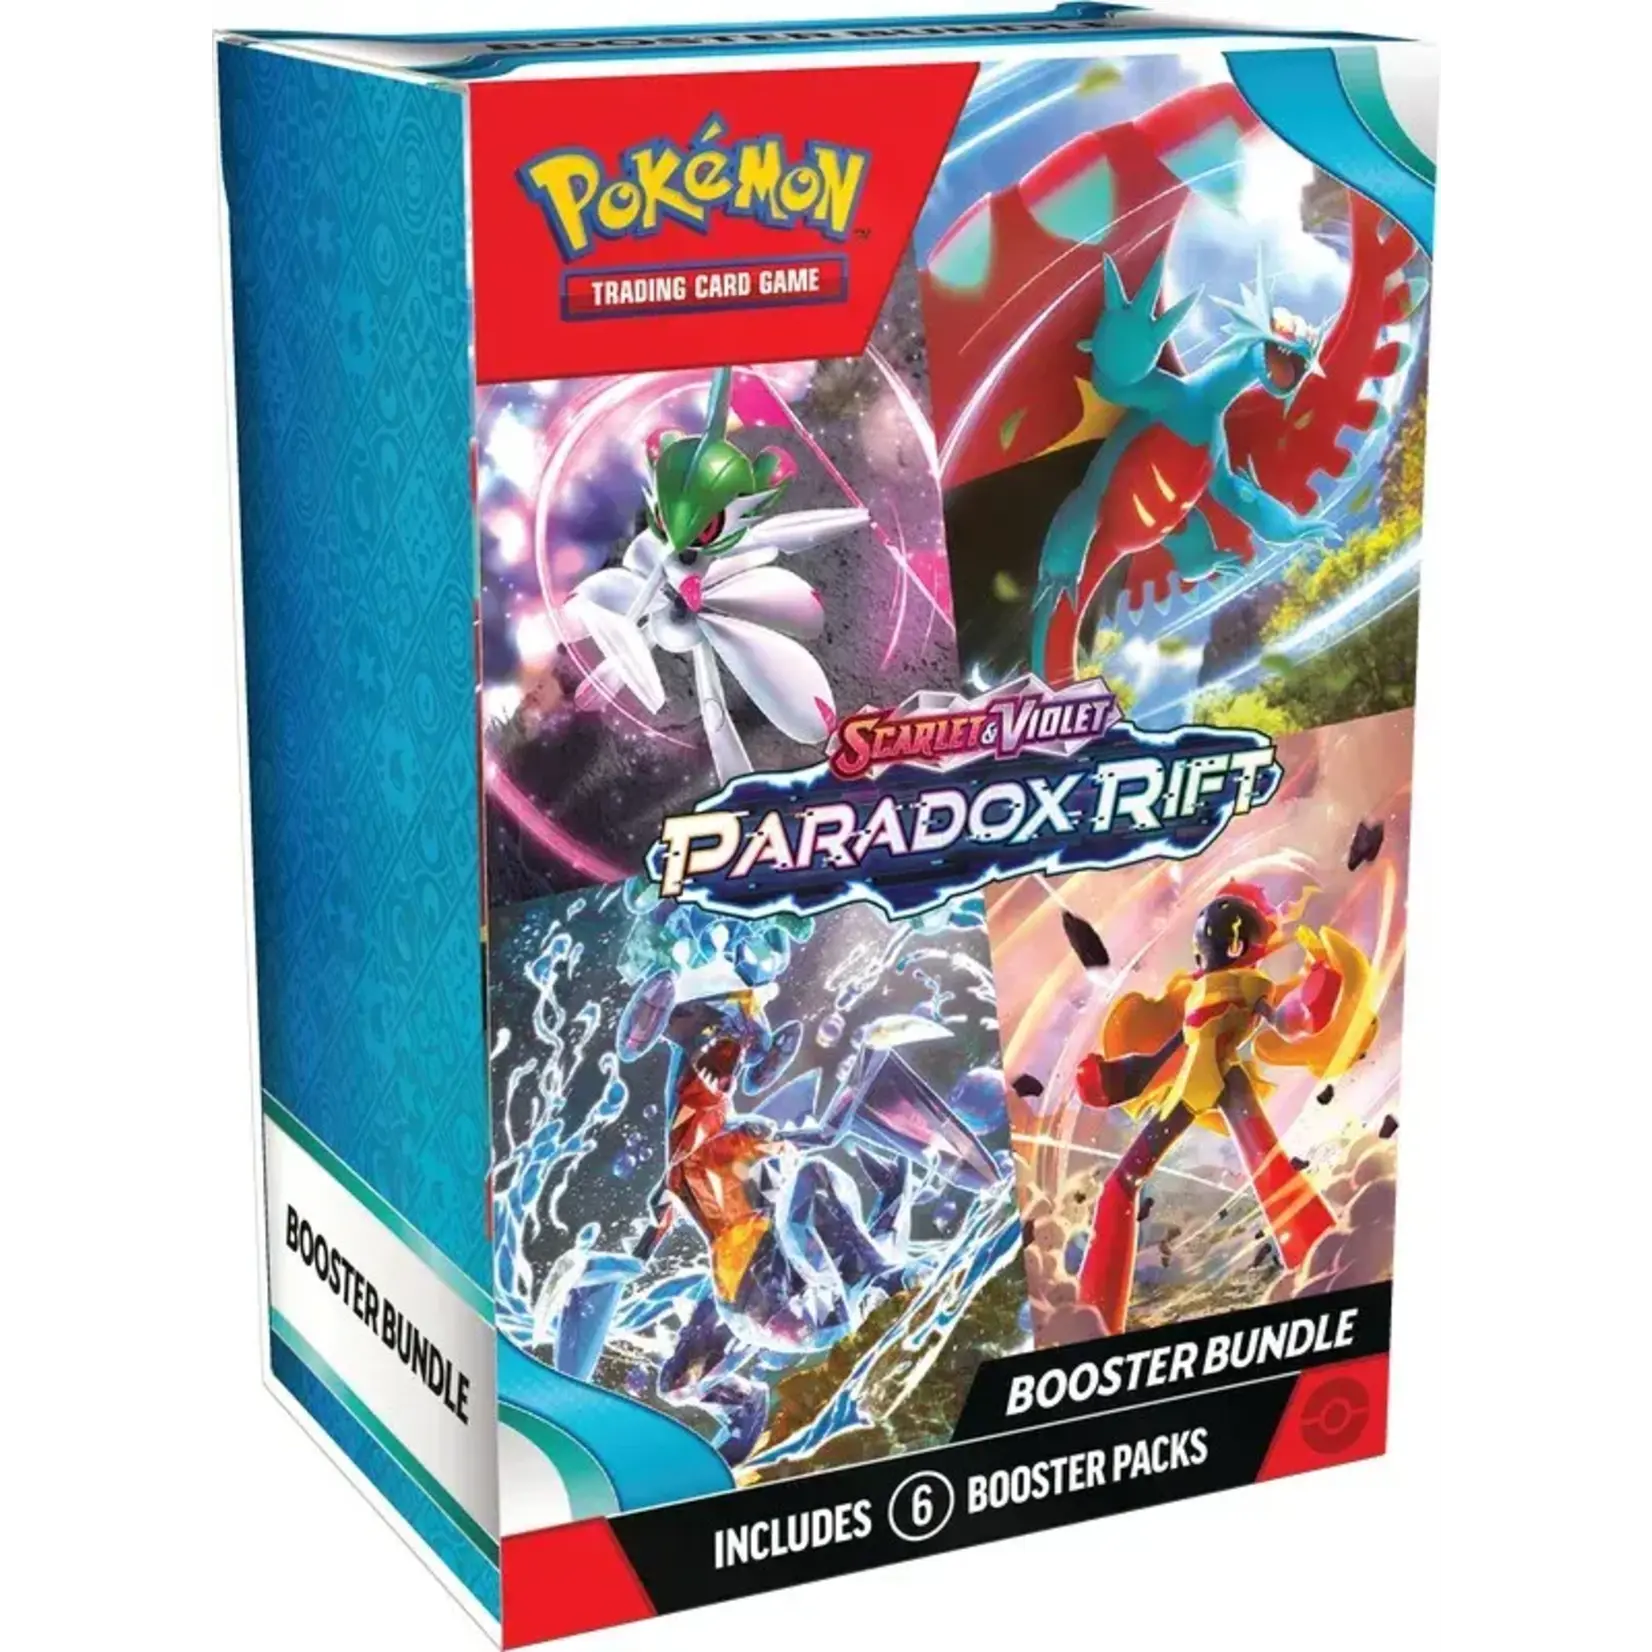 Pokémon Pokemon TCG: Scarlet & Violet 04 Paradox Rift - Booster Bundle Box (PRE-ORDER)